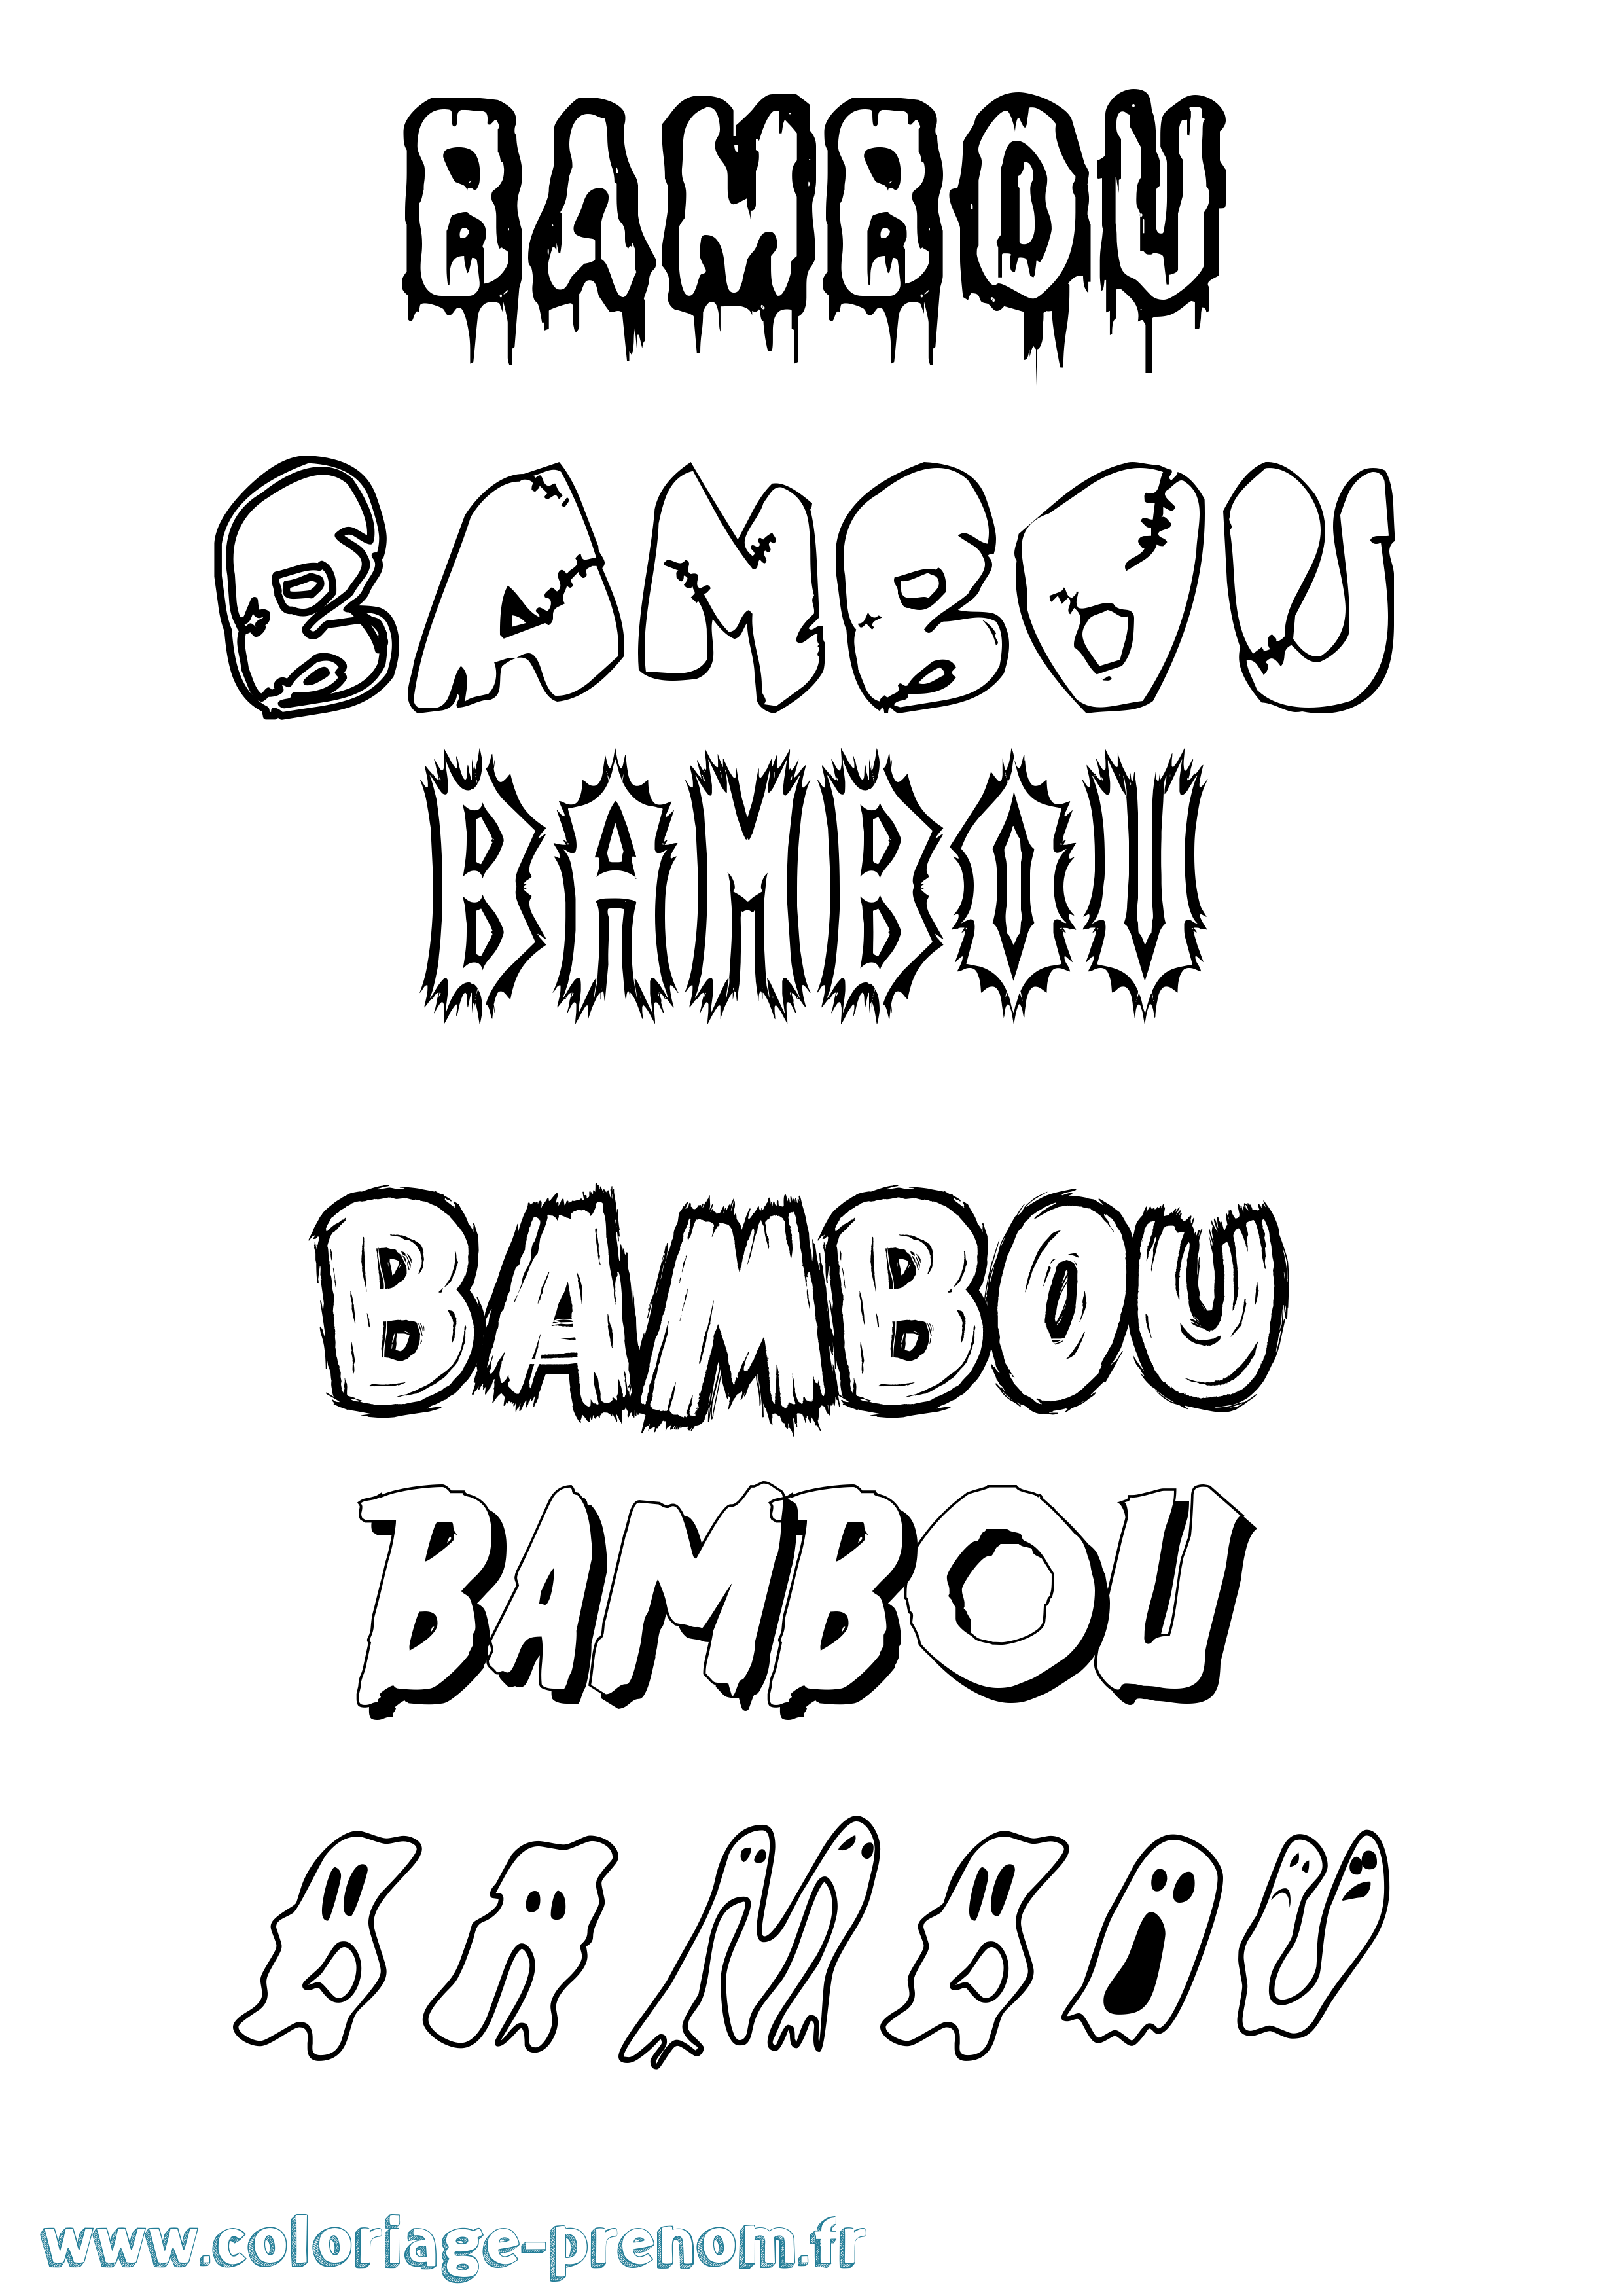 Coloriage prénom Bambou Frisson